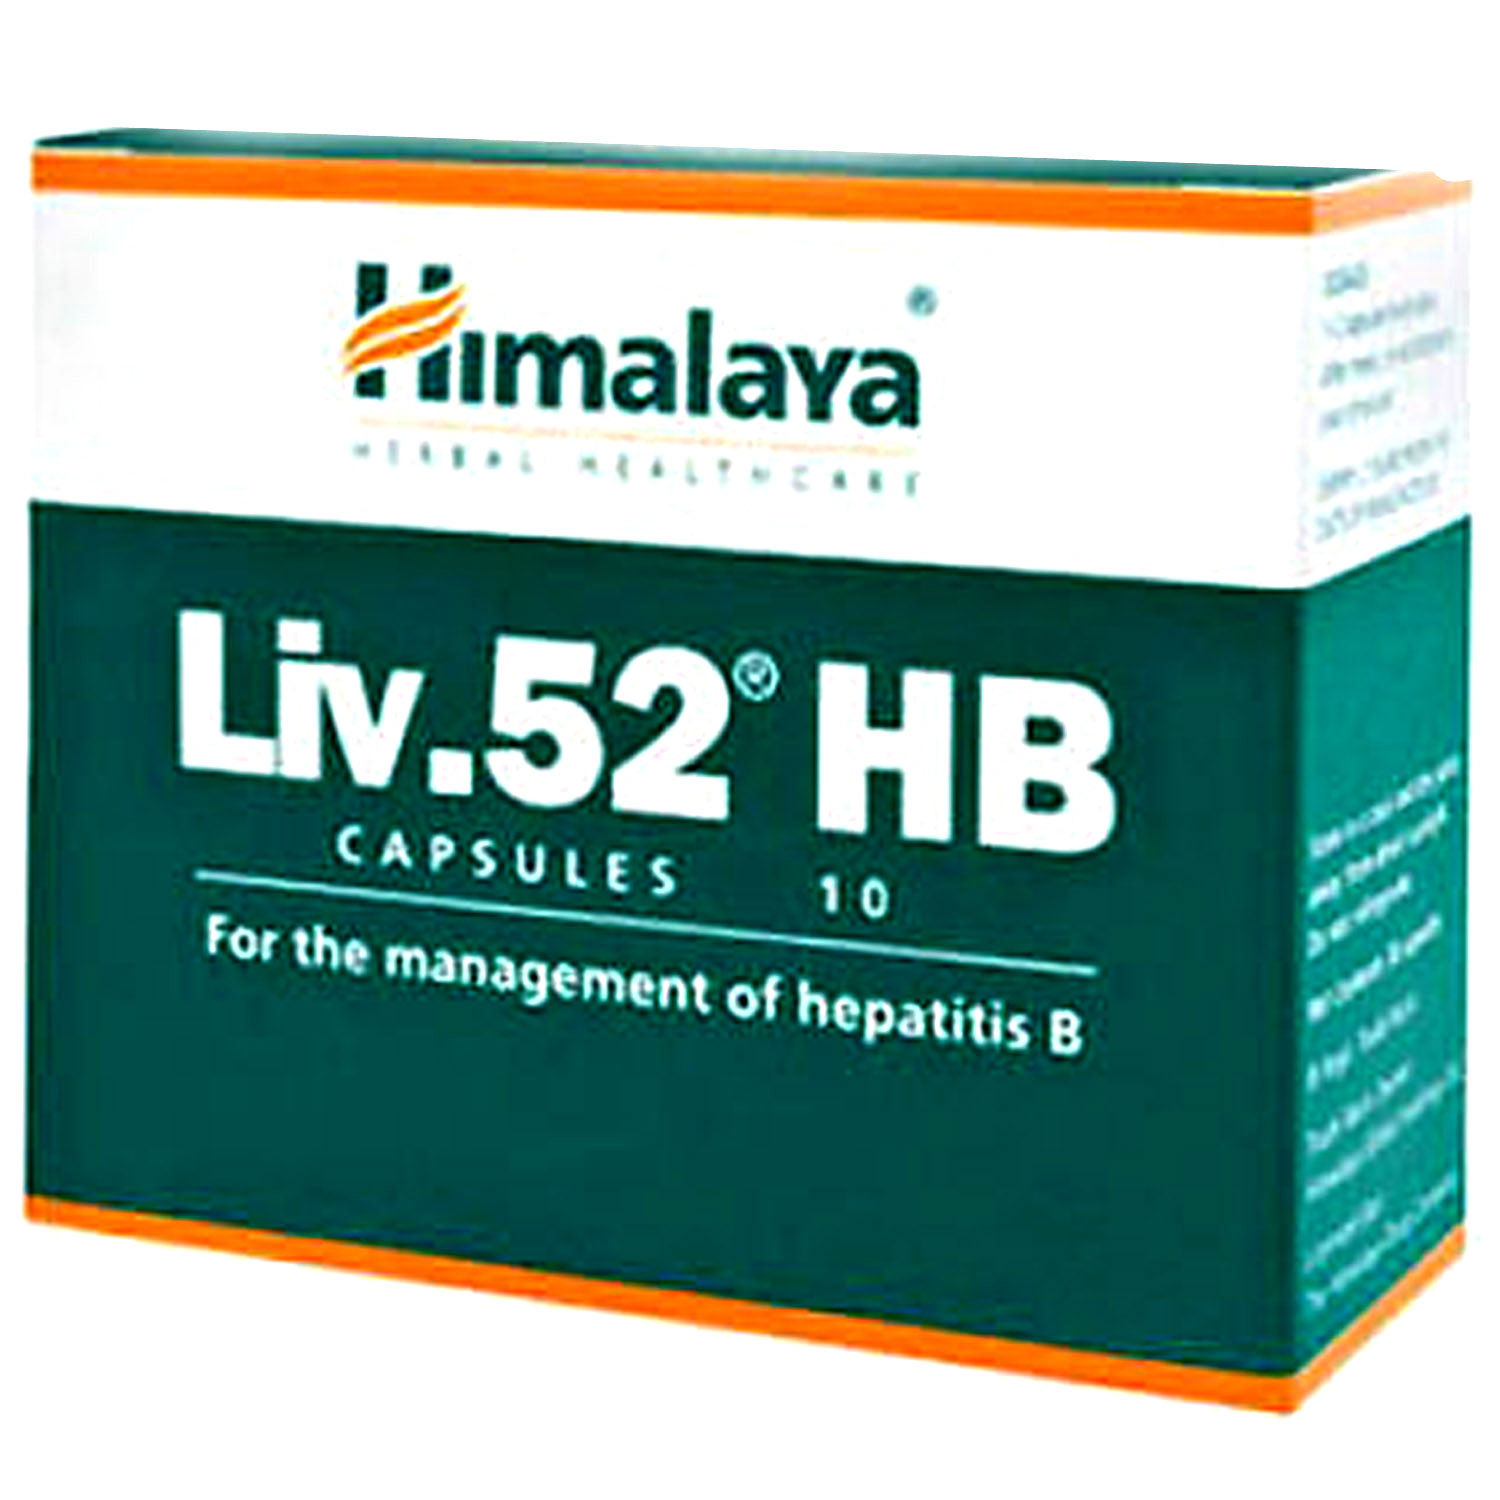 Buy Himalaya Liv.52 Hb, 10 Capsules Online